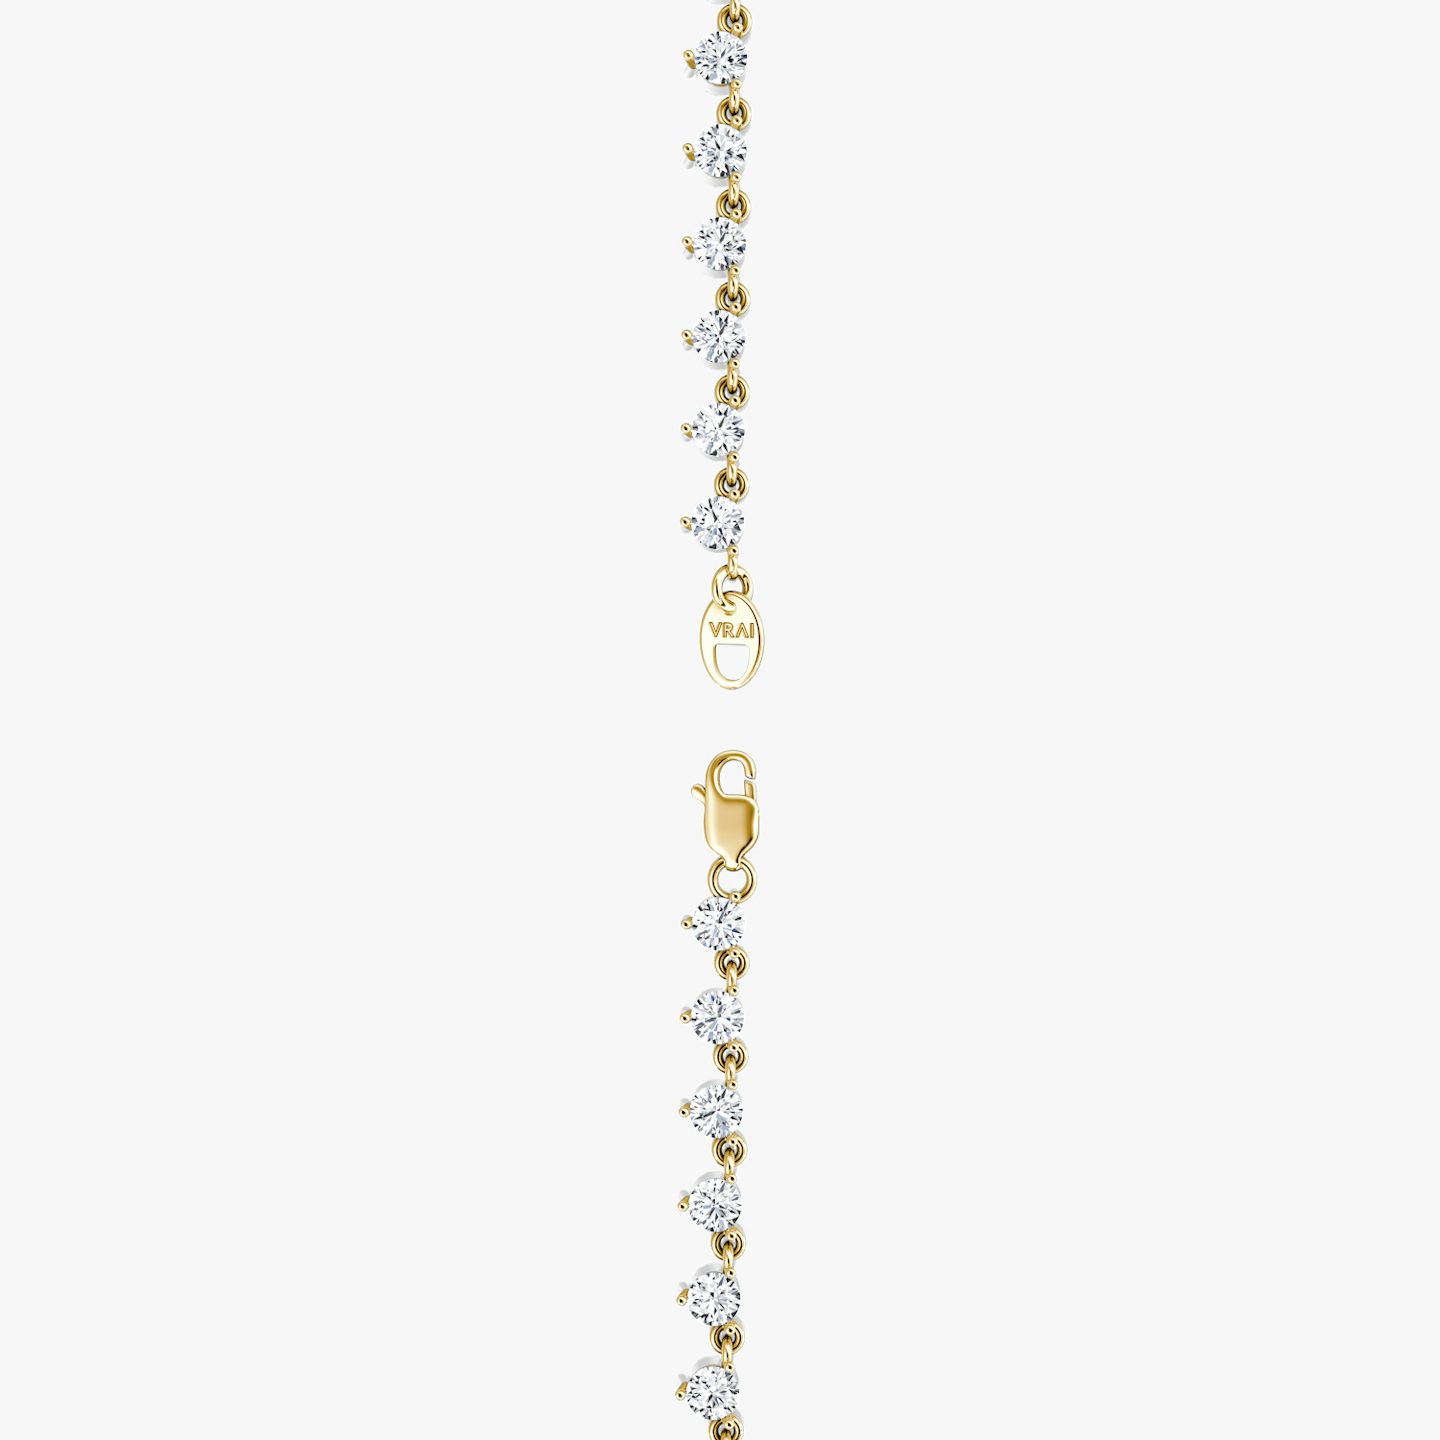 Collar Infinity Linked Tenis | Brillante | 14k | Oro amarillo de 18 quilates | Peso en quilates: 13 | Longitud de la cadena: 16-18